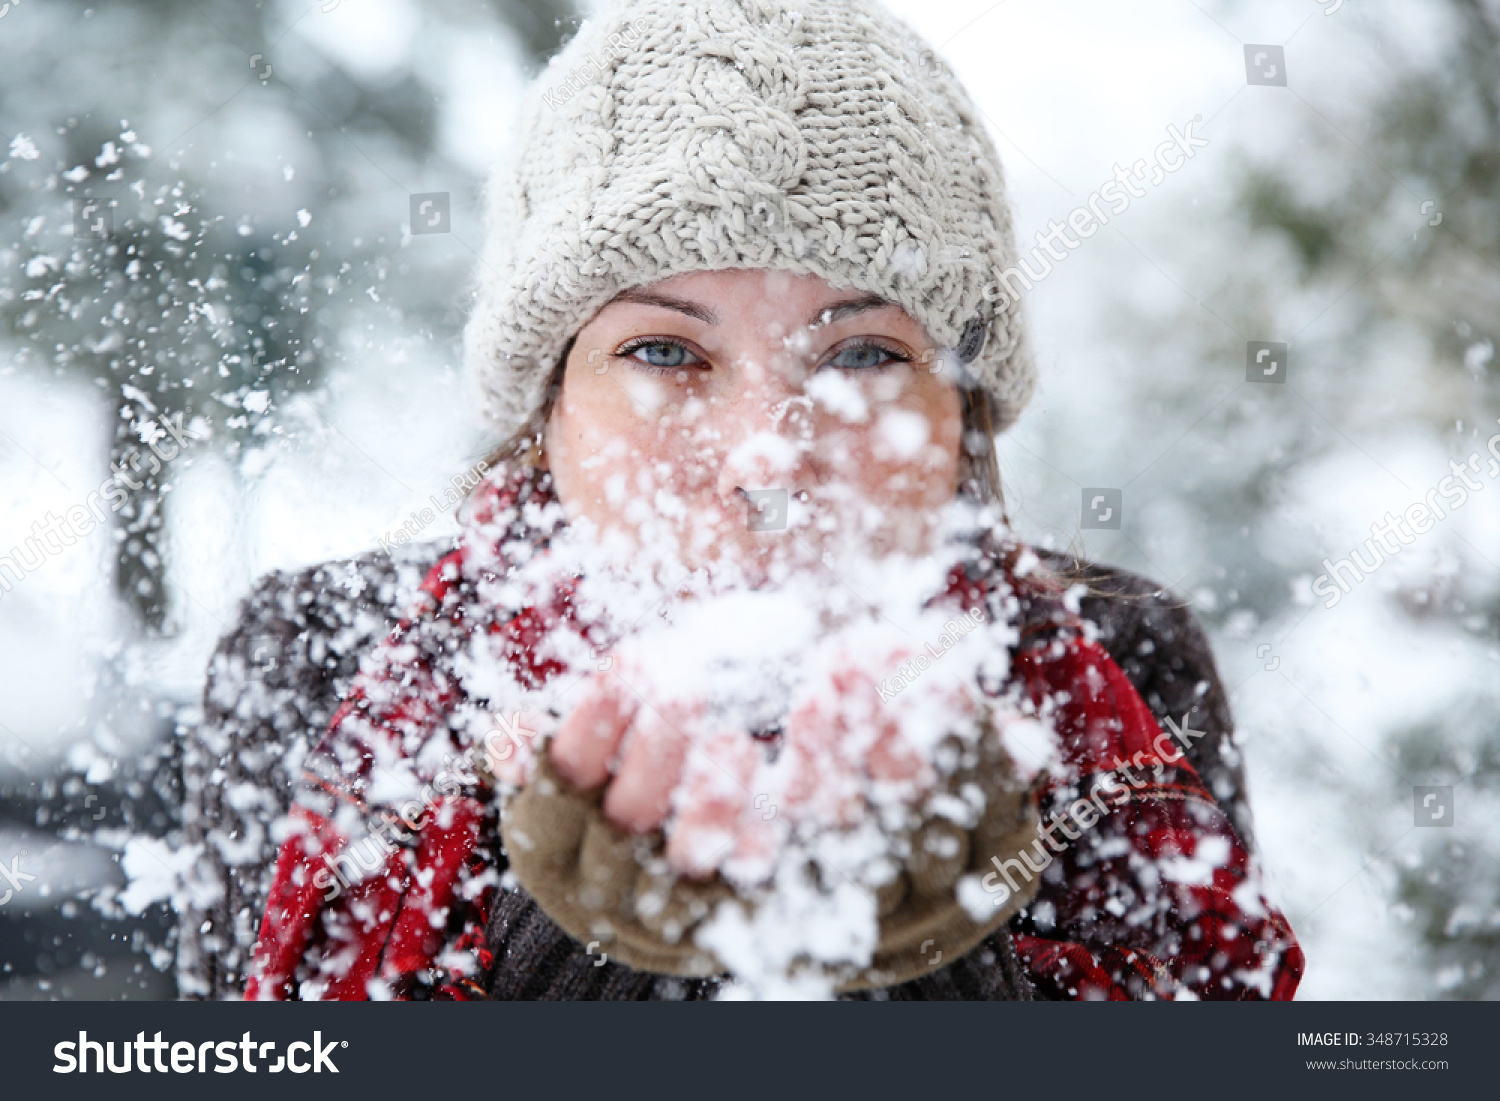 673,858 Women in snow Images, Stock Photos & Vectors | Shutterstock